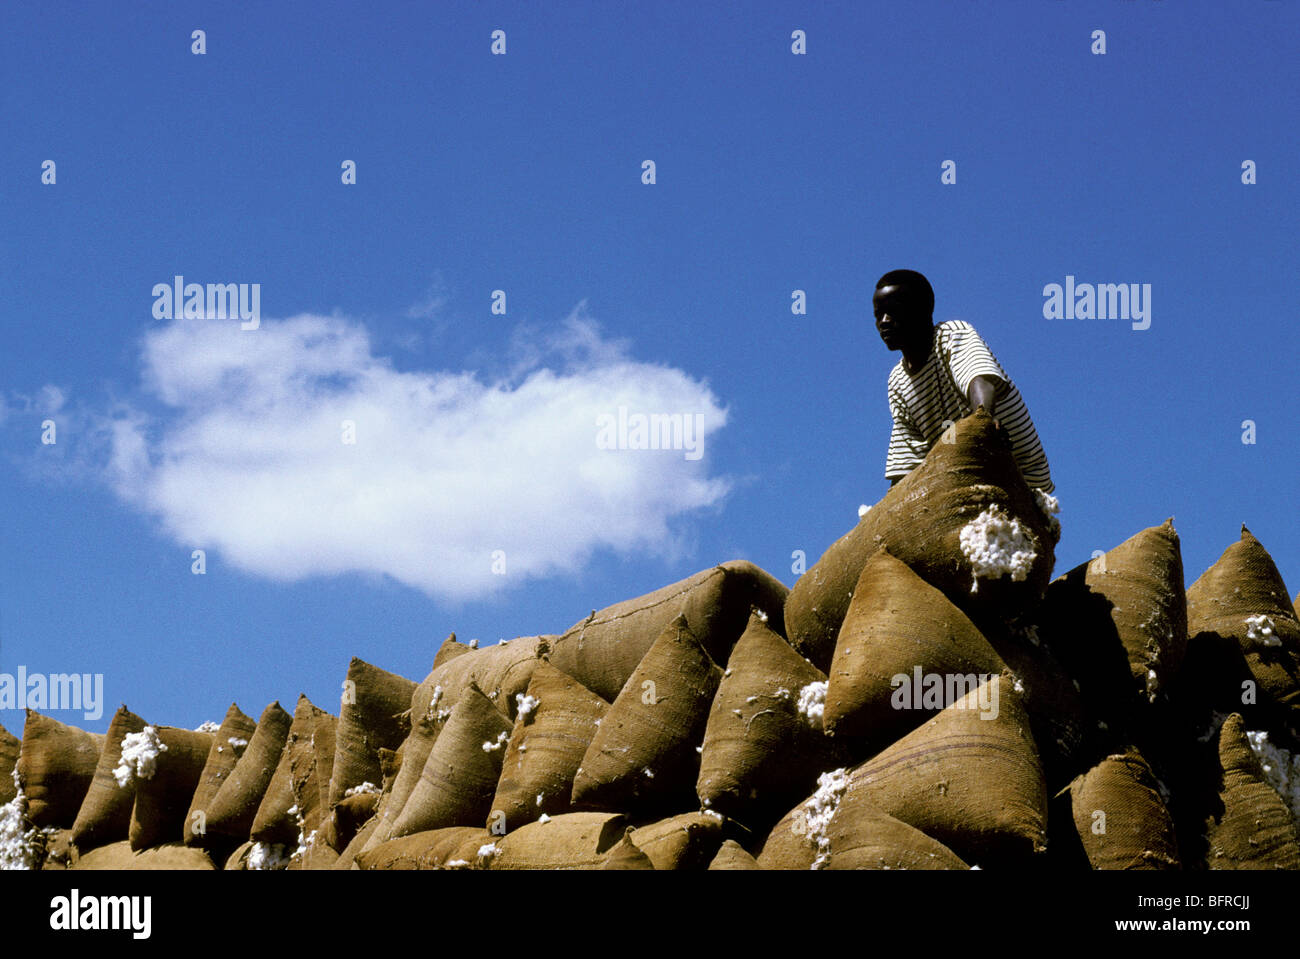 Man loading cotton sacks Stock Photo